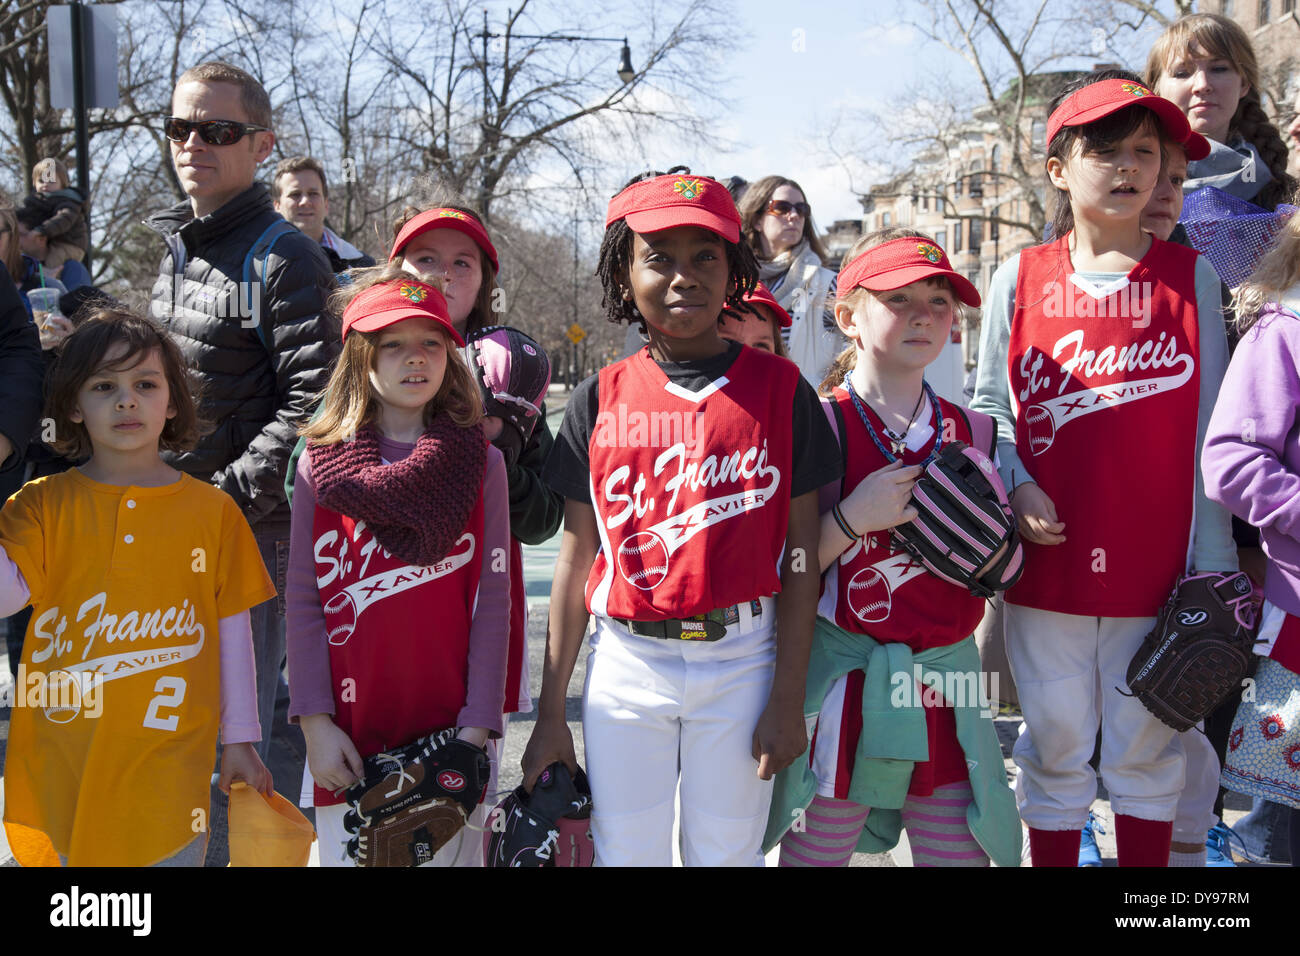 Little League Parade starts the baseball season in Park Slope, Brooklyn, NY. Stock Photo